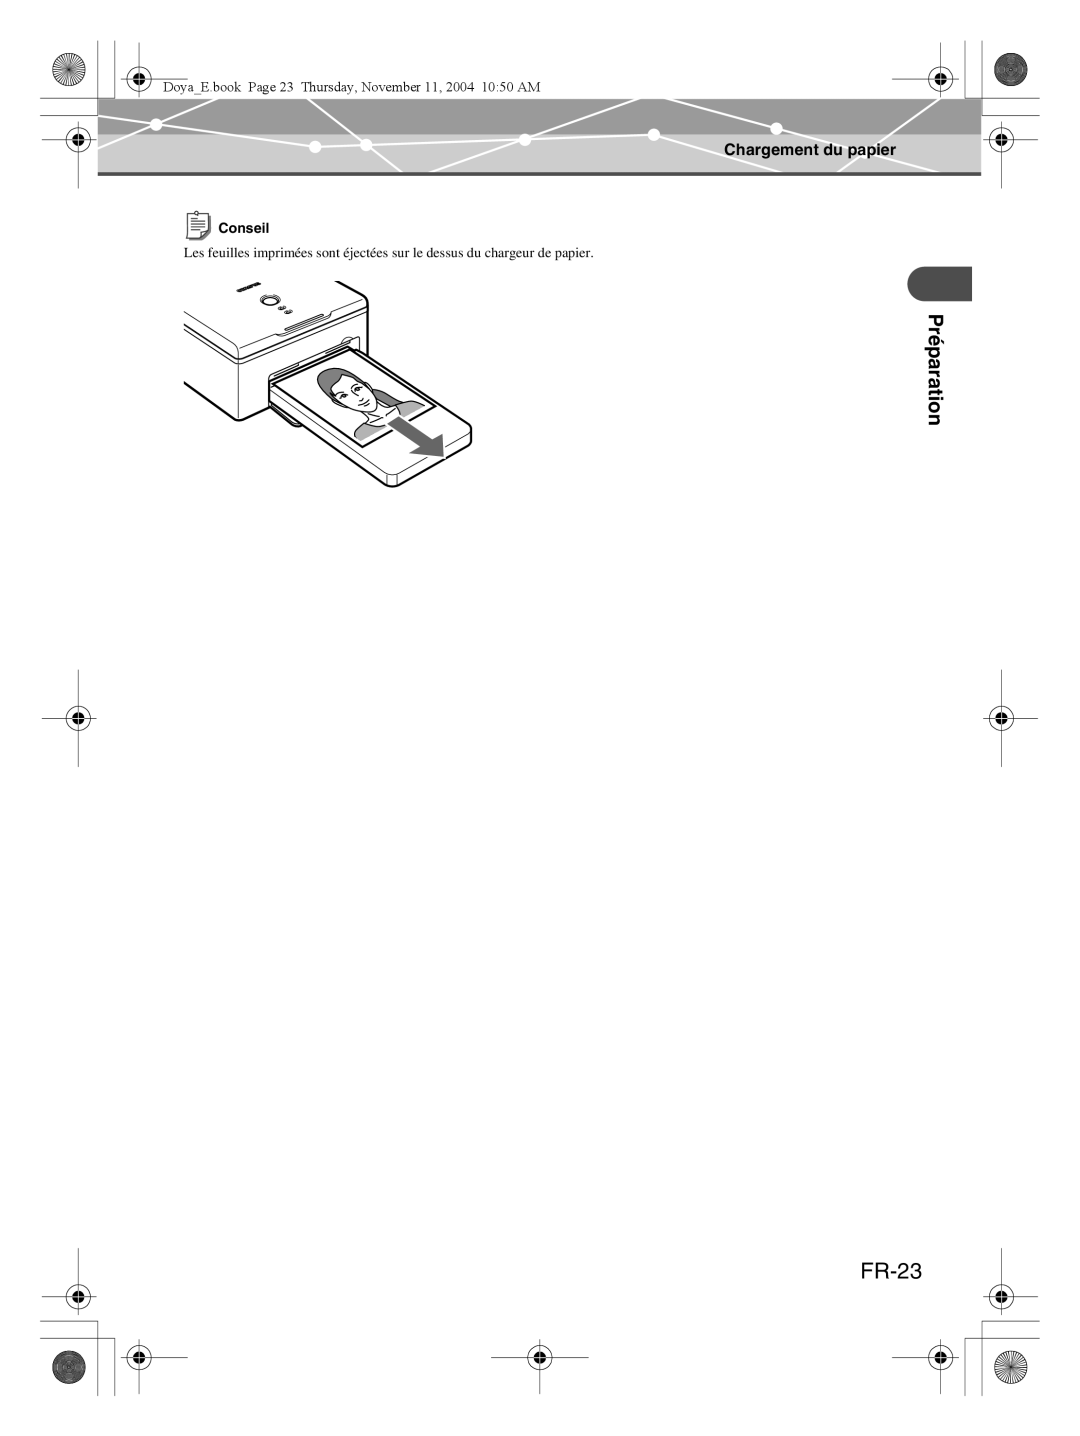 Olympus P-S100 user manual FR-23, Préparation, Chargement du papier, Conseil 